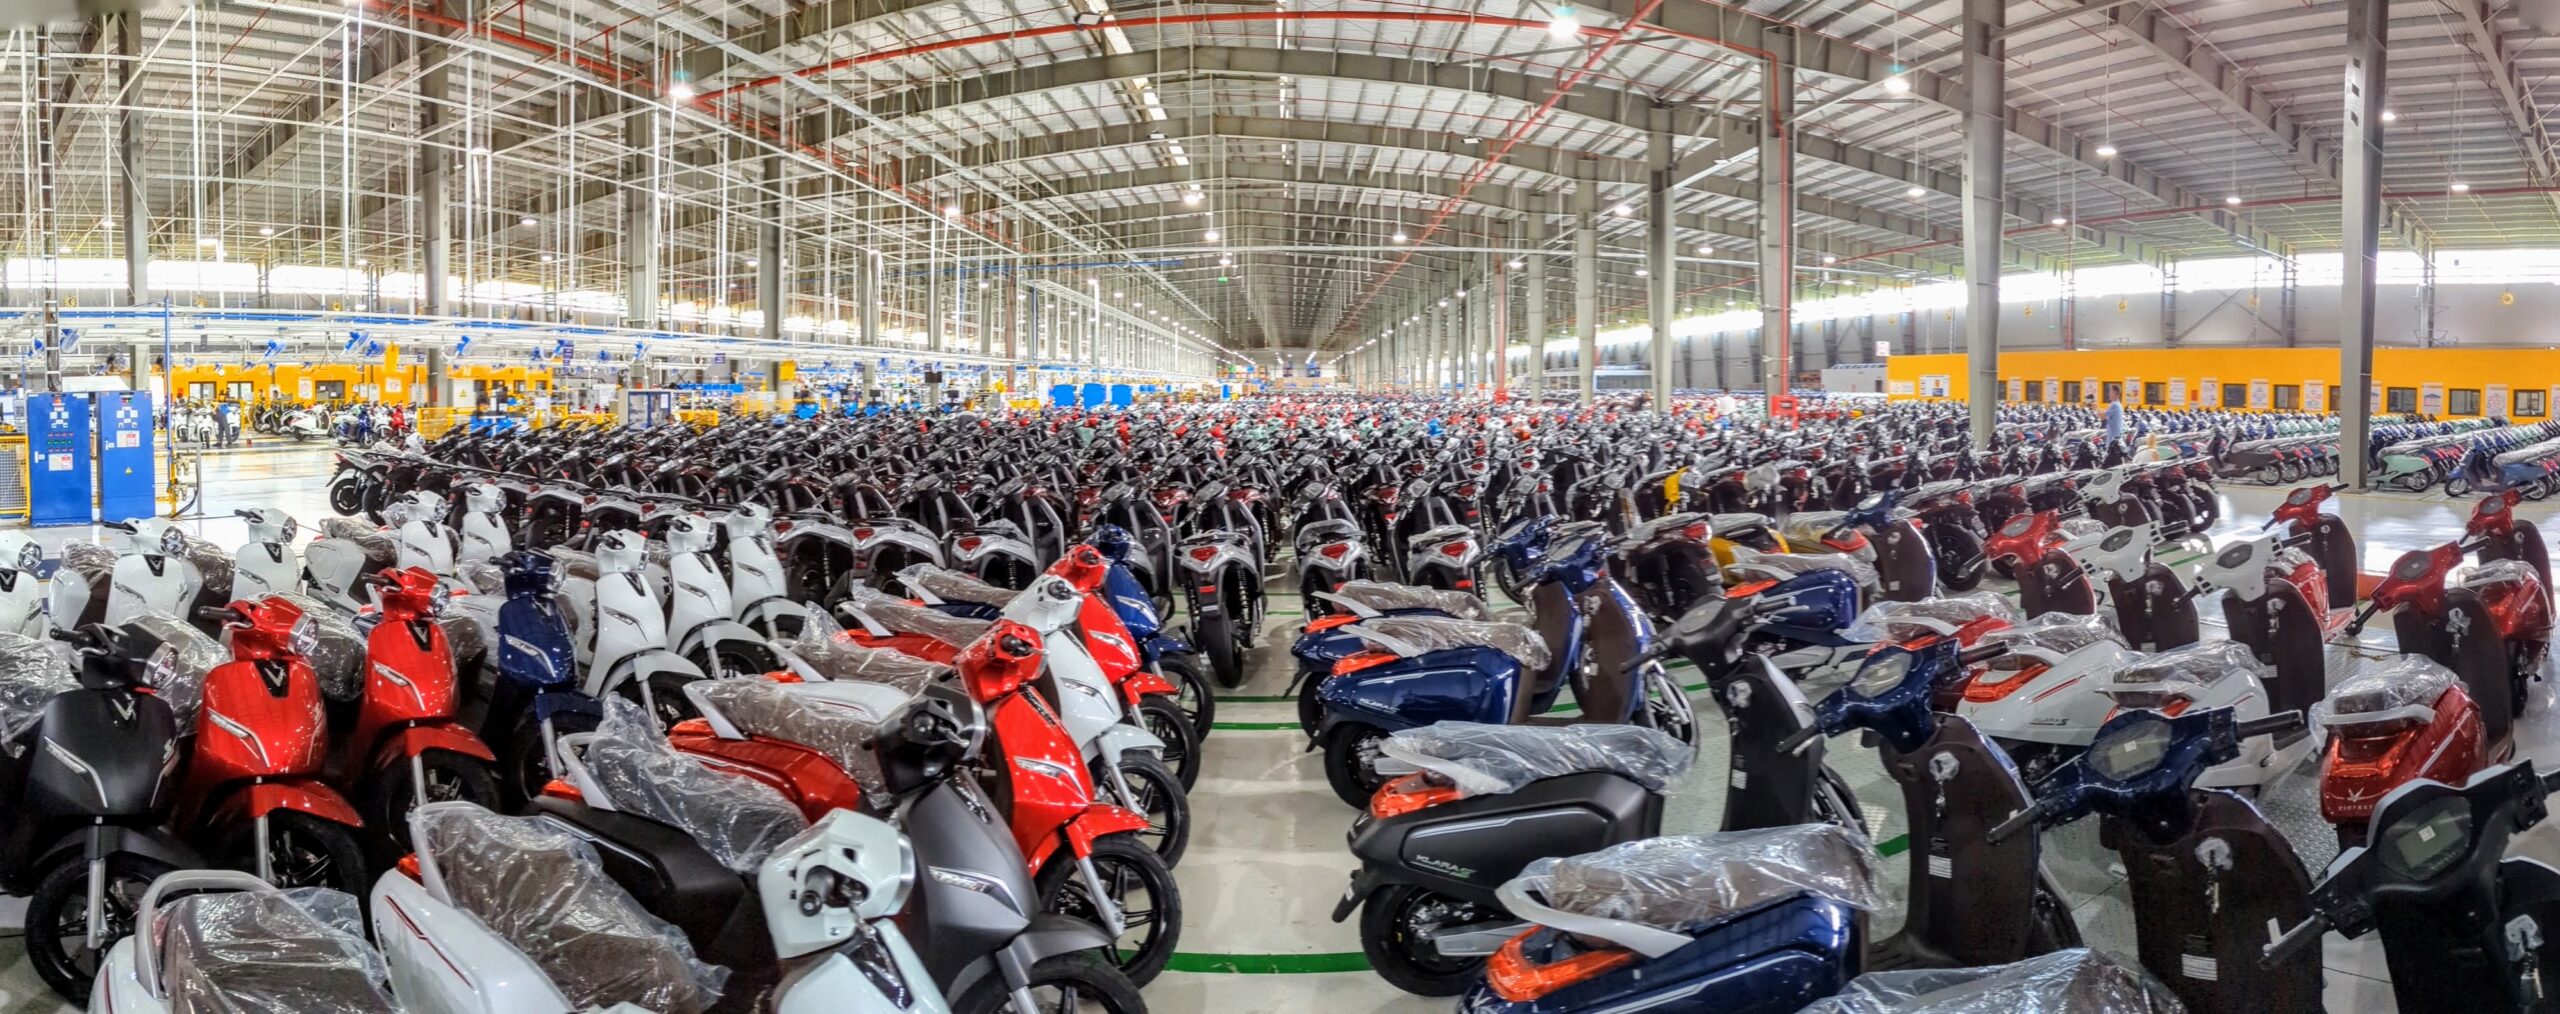 2022 07 vinfast vietnam tour kyle headquarters scooter general assembly factory tour hai phong